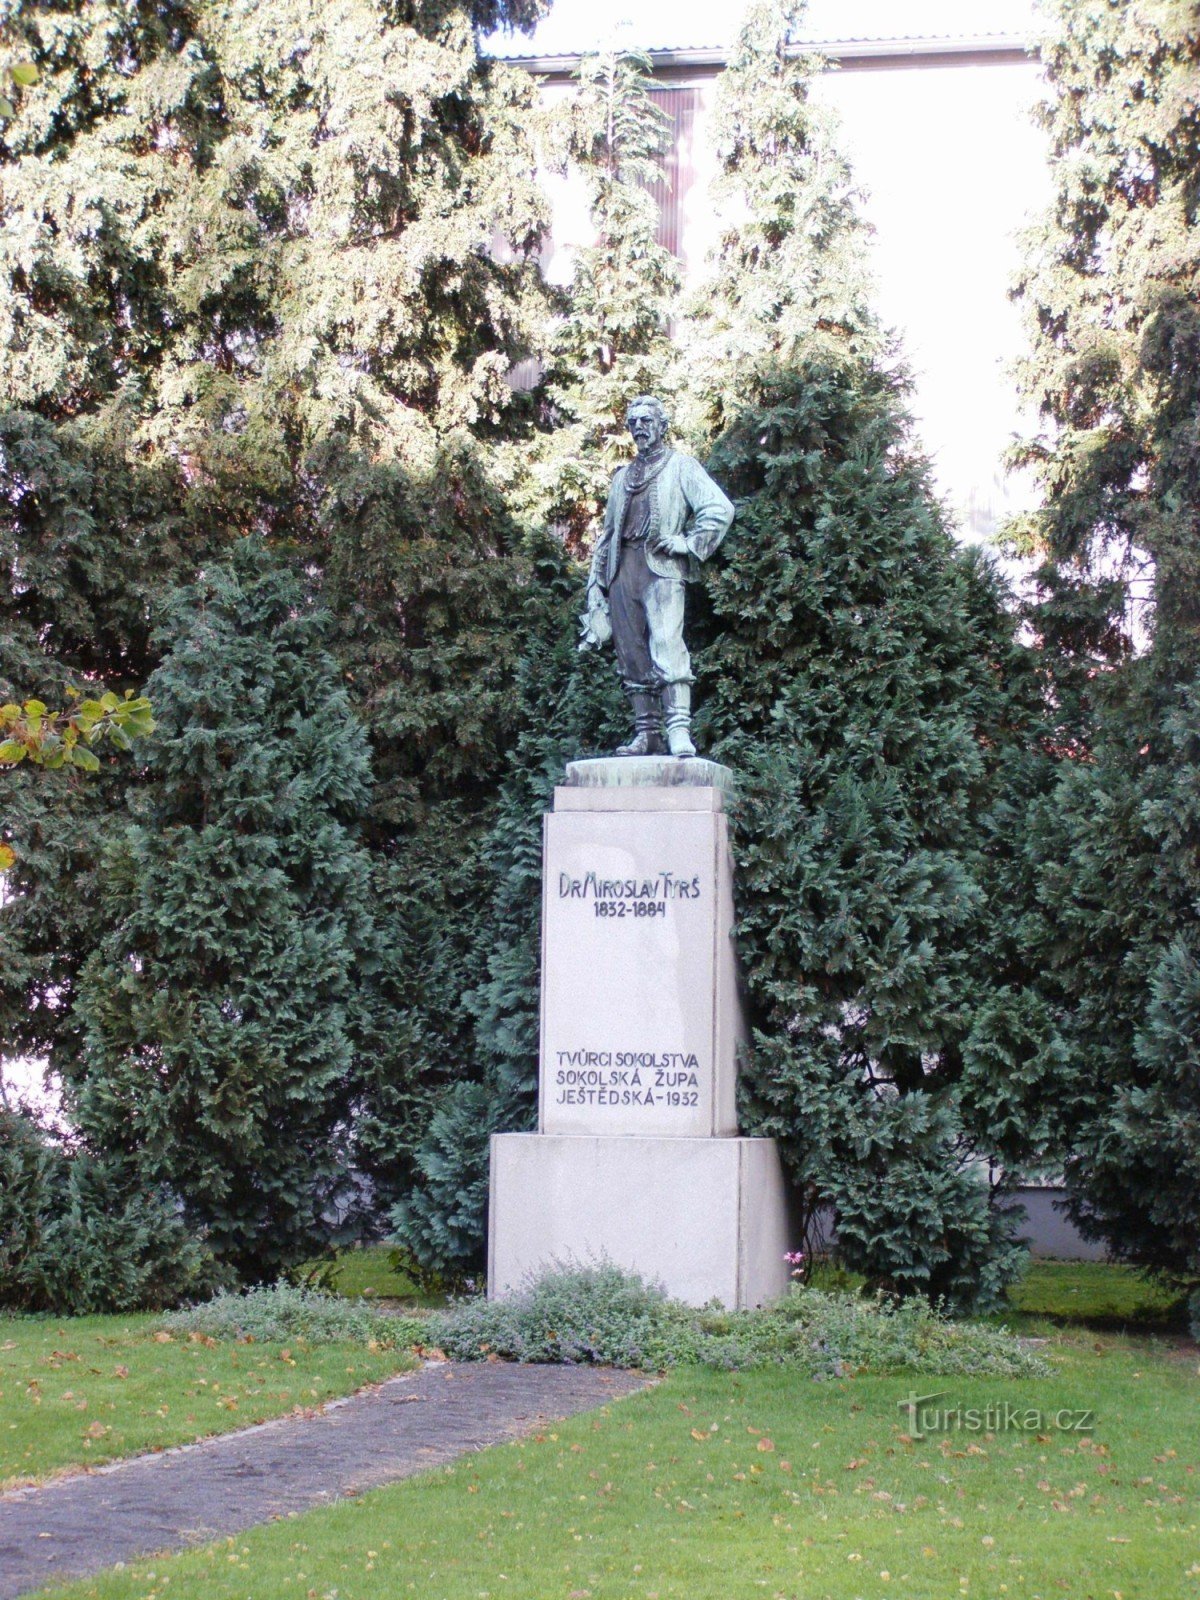 Turnov - 博士的纪念碑。 米罗斯拉夫·蒂尔什